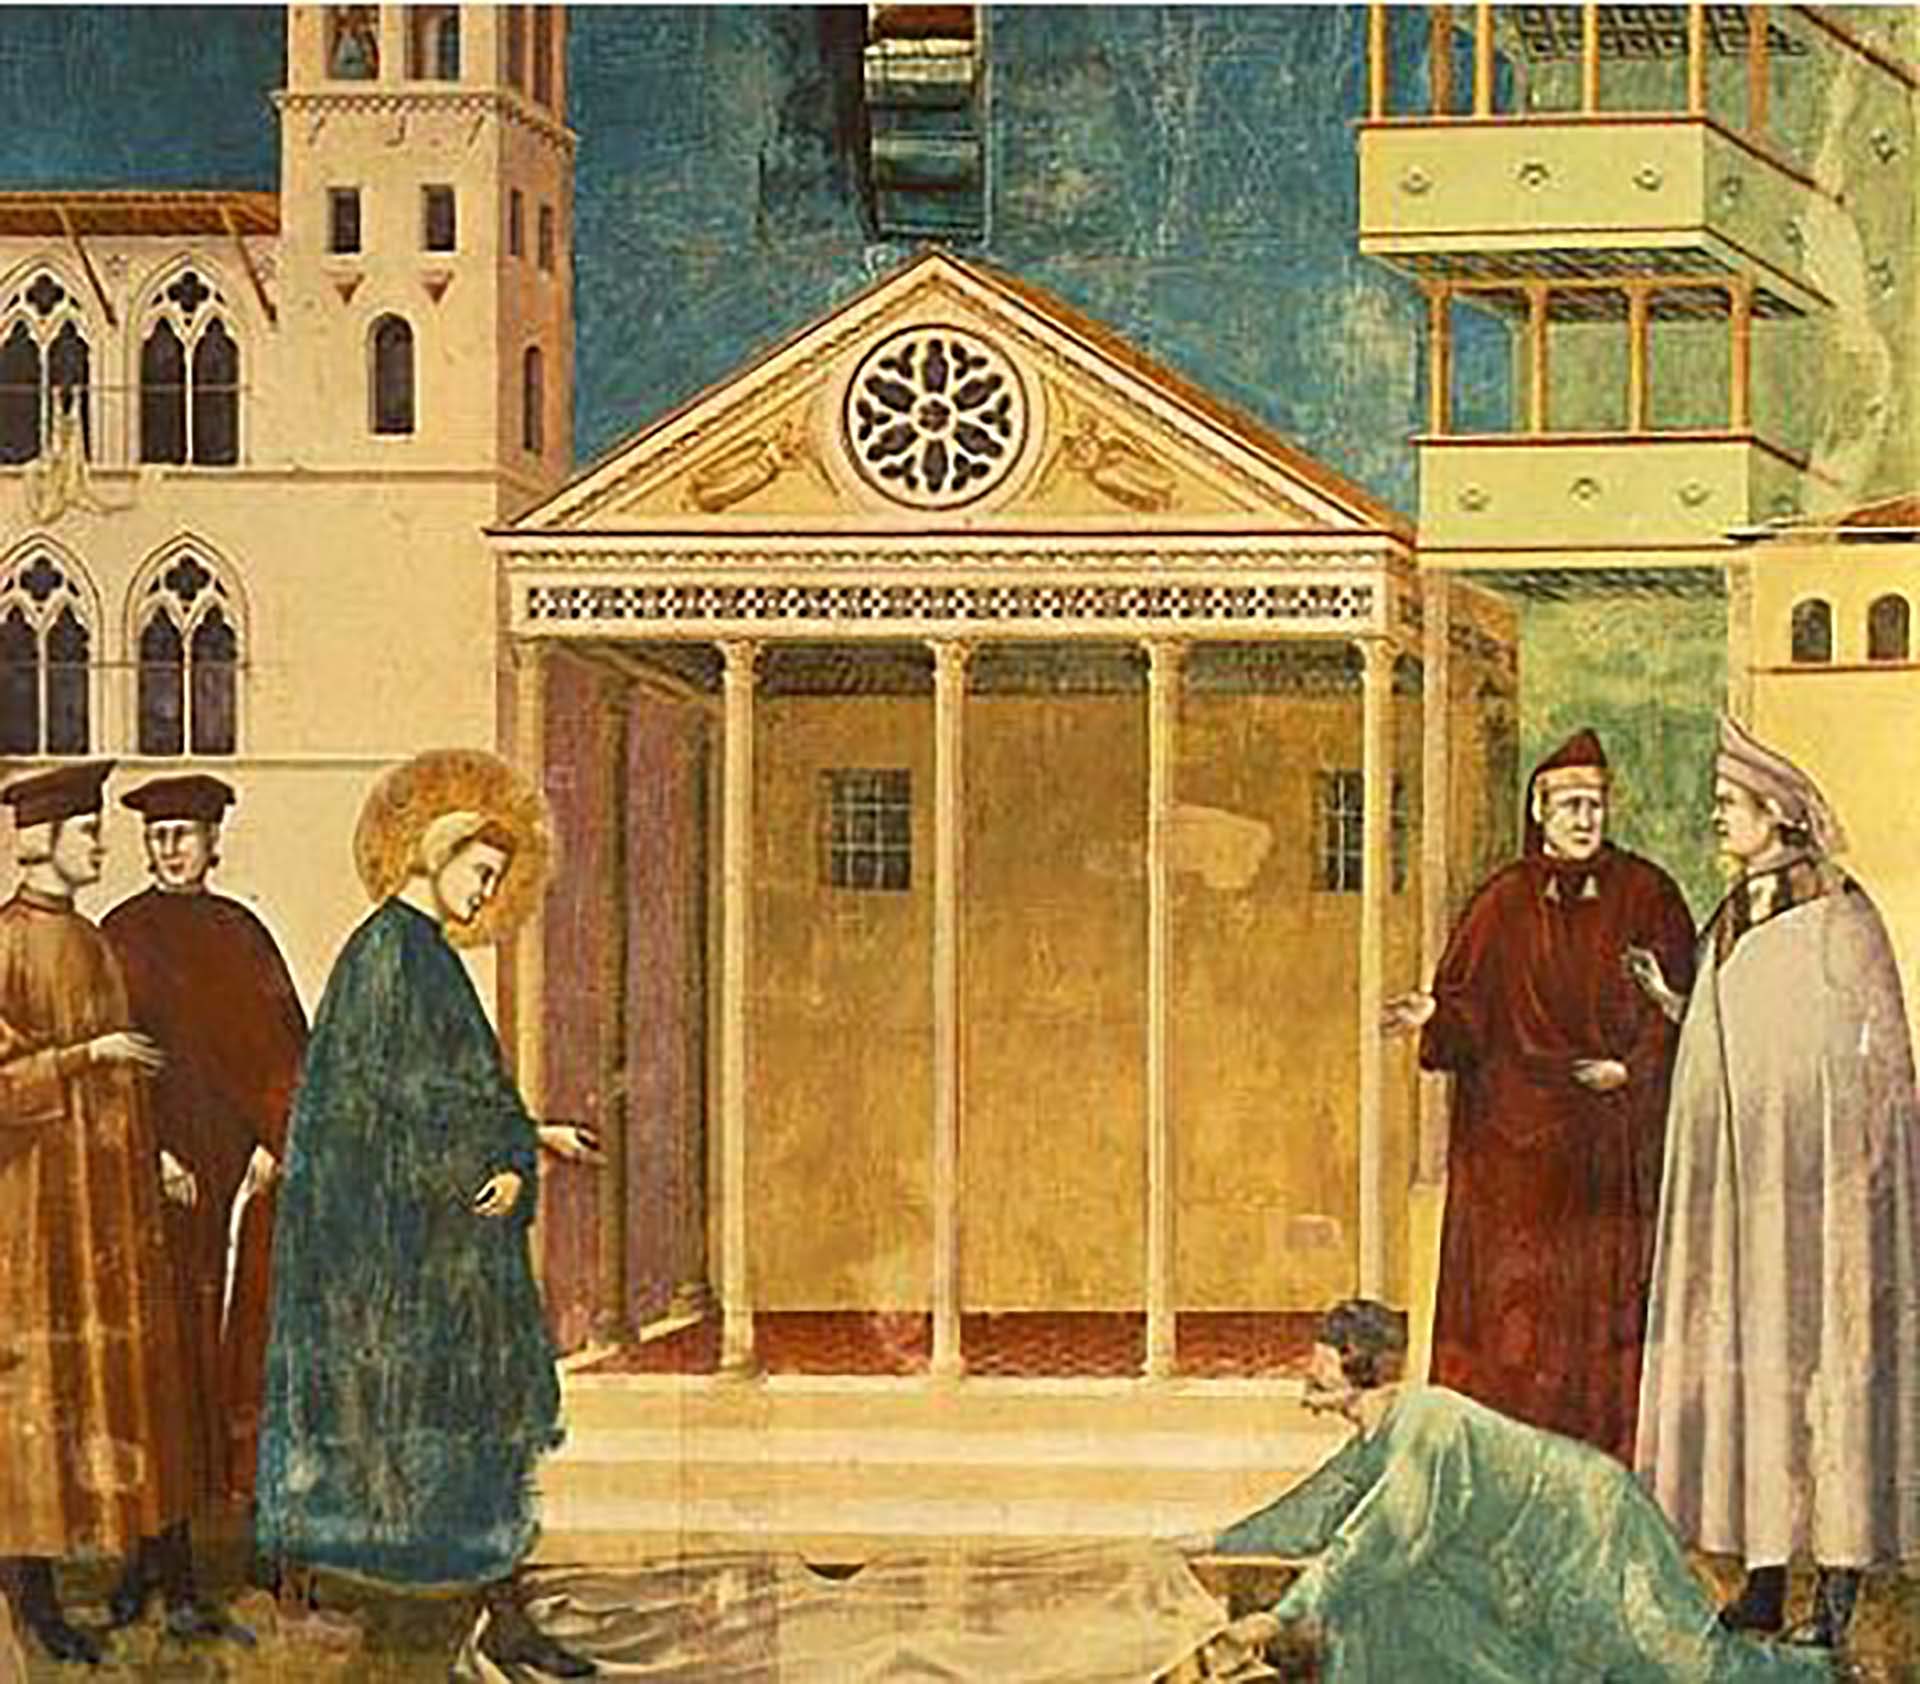 El fresco de Giotto que representa la escena donde un hombre pobre extendía su capa adonde Francisco (que aún no había recibido la revelación divina) iba a pisar